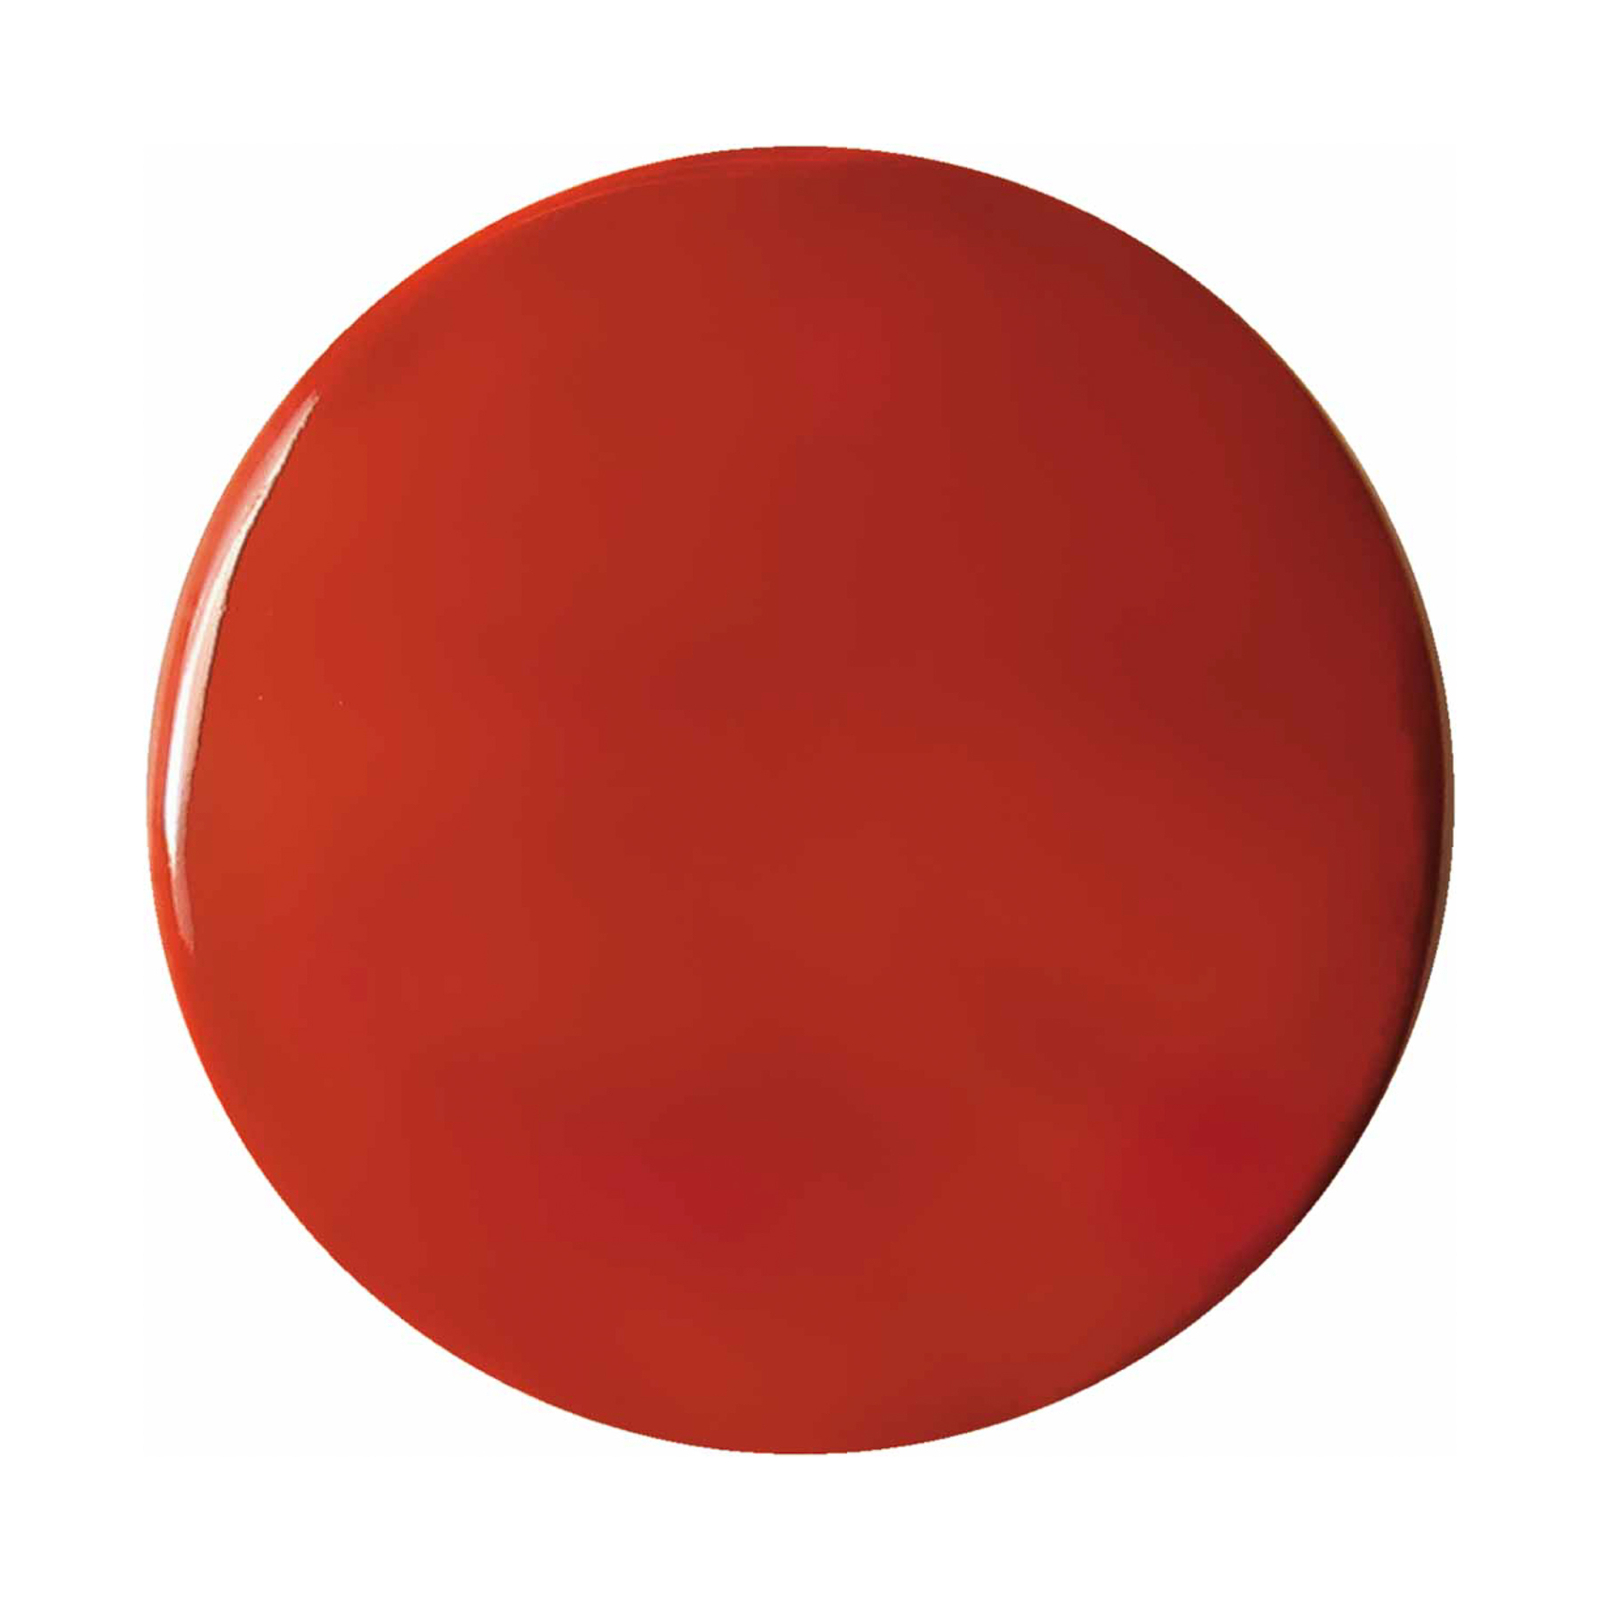 Függő lámpa Ayrton, kerámia, hossza 29 cm, piros